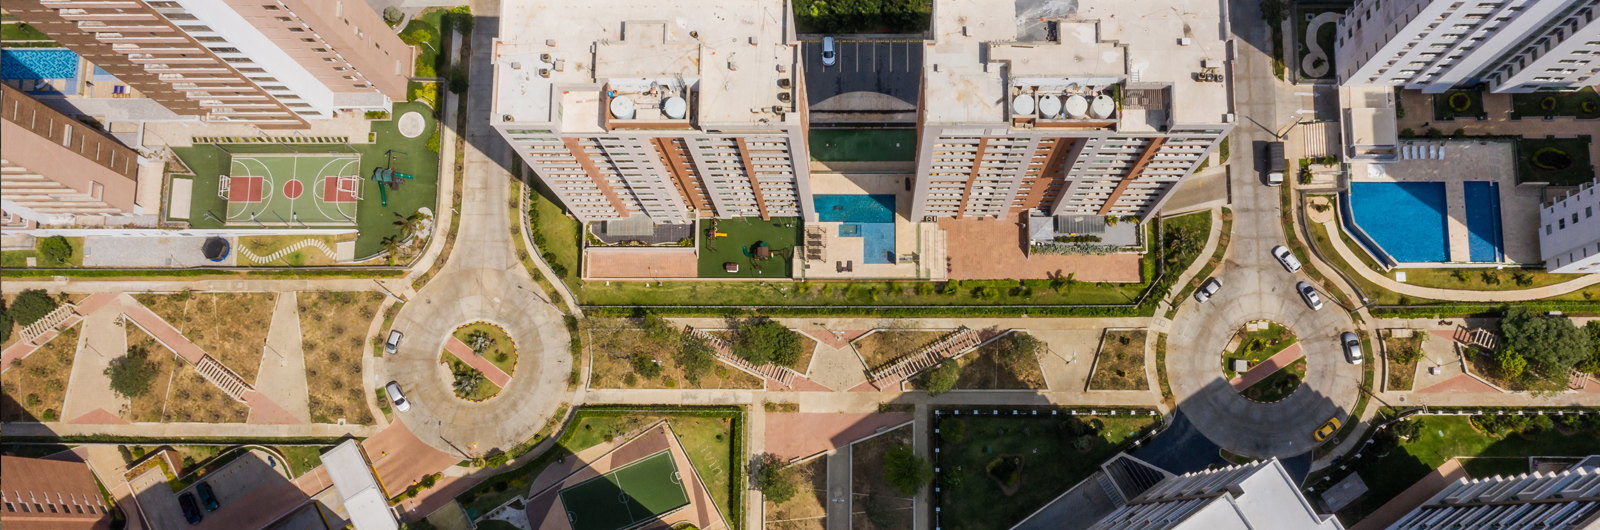 Vista aérea de un conjunto residencial